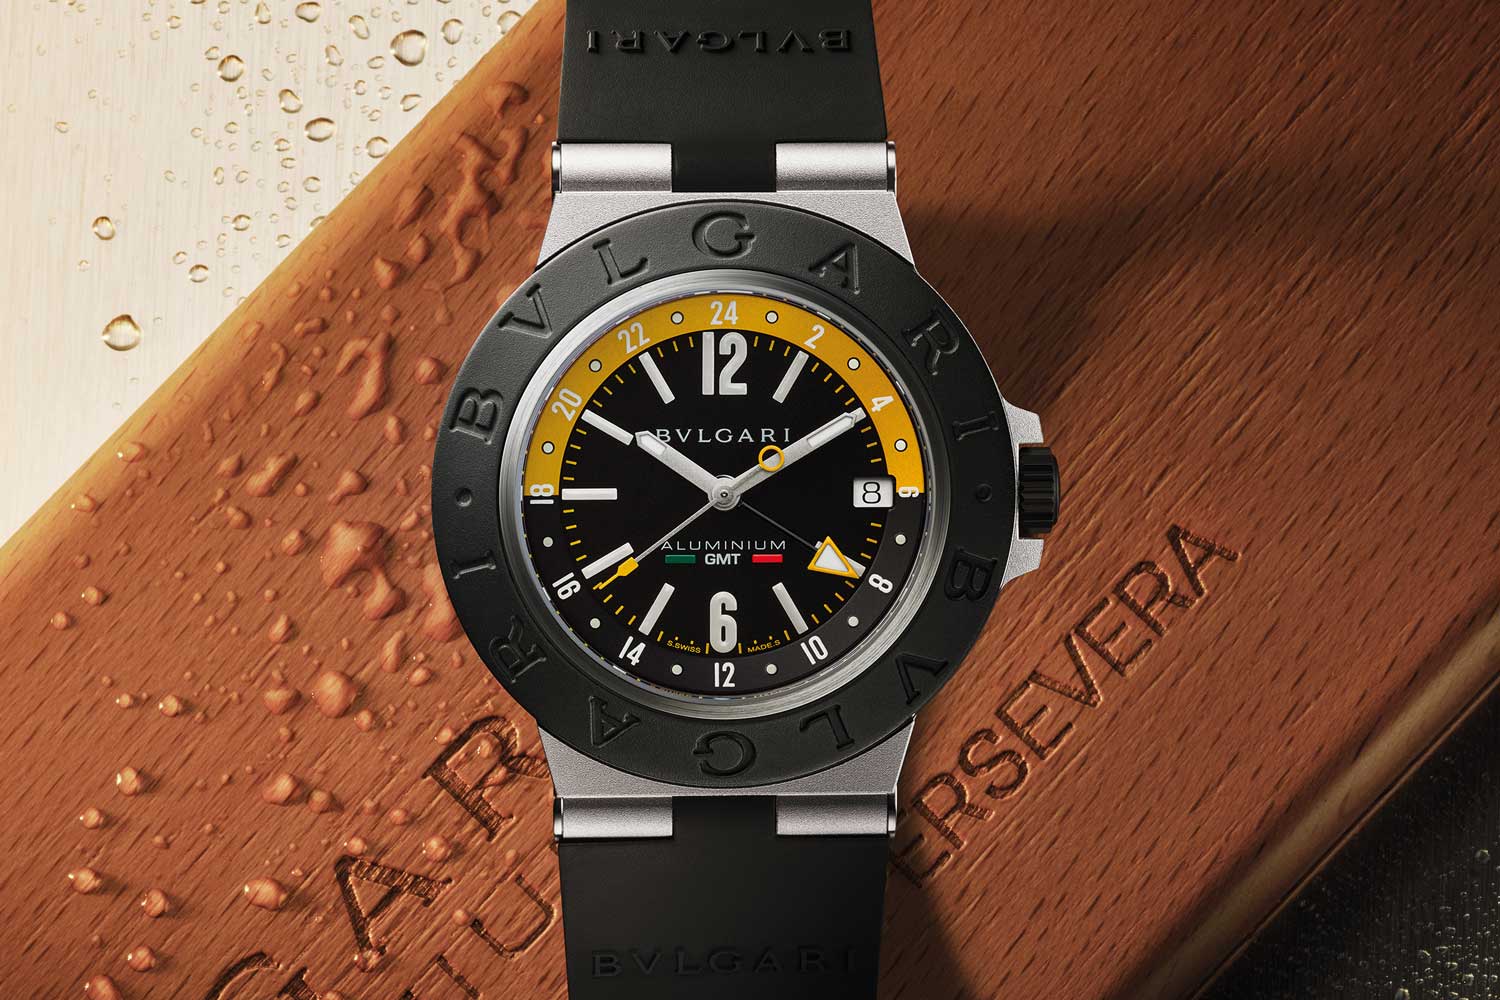 Đồng hồ Bvlgari Aluminium GMT Phiên bản đặc biệt Amerigo Vespucci